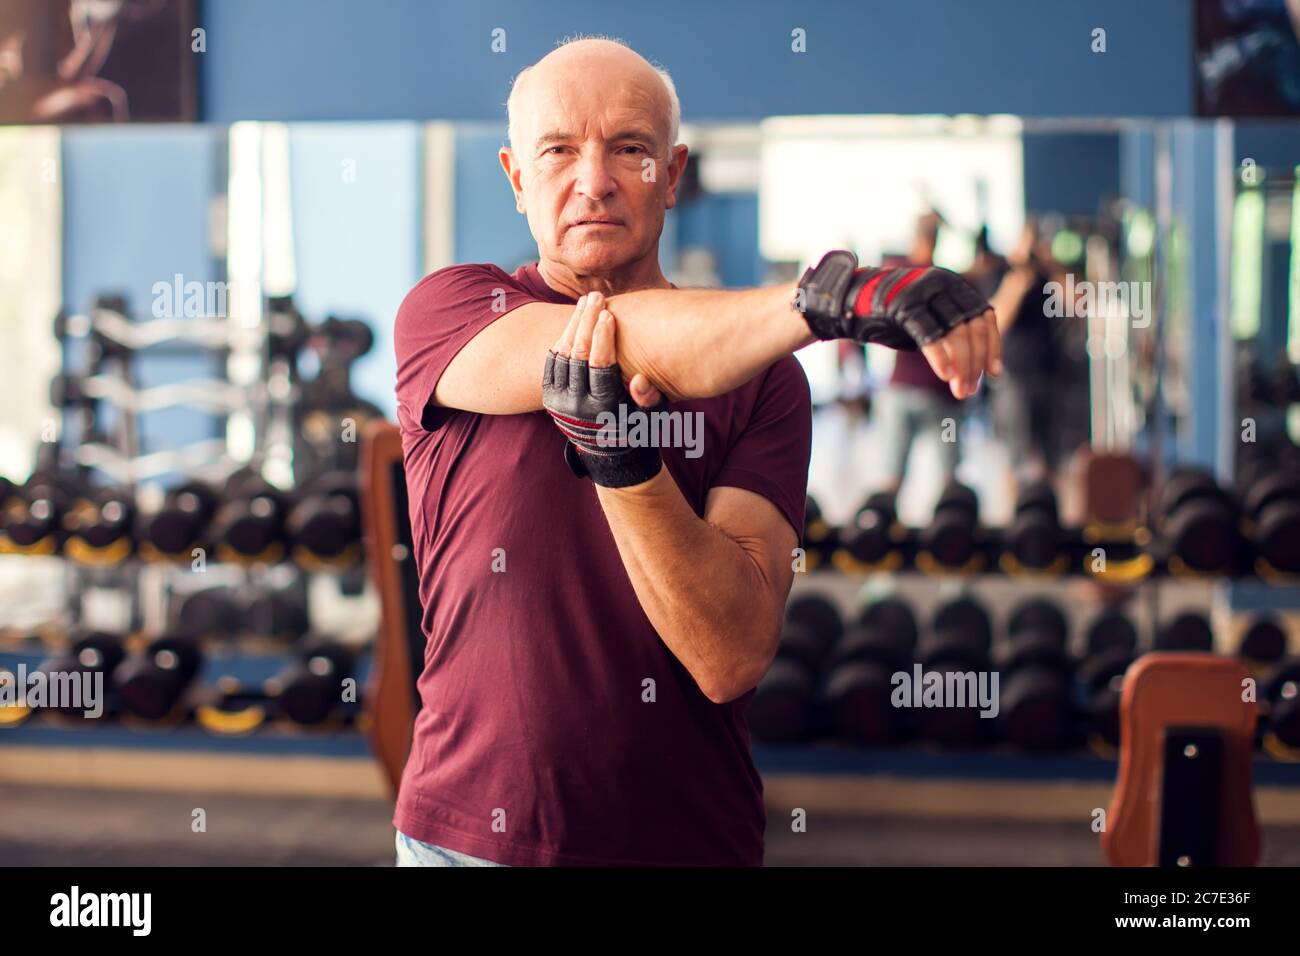 Un portrait d'homme âgé chauve qui fait de l'exercice avant de s'entraîner dans la salle de gym. Concept de personnes, de soins de santé et de mode de vie Banque D'Images